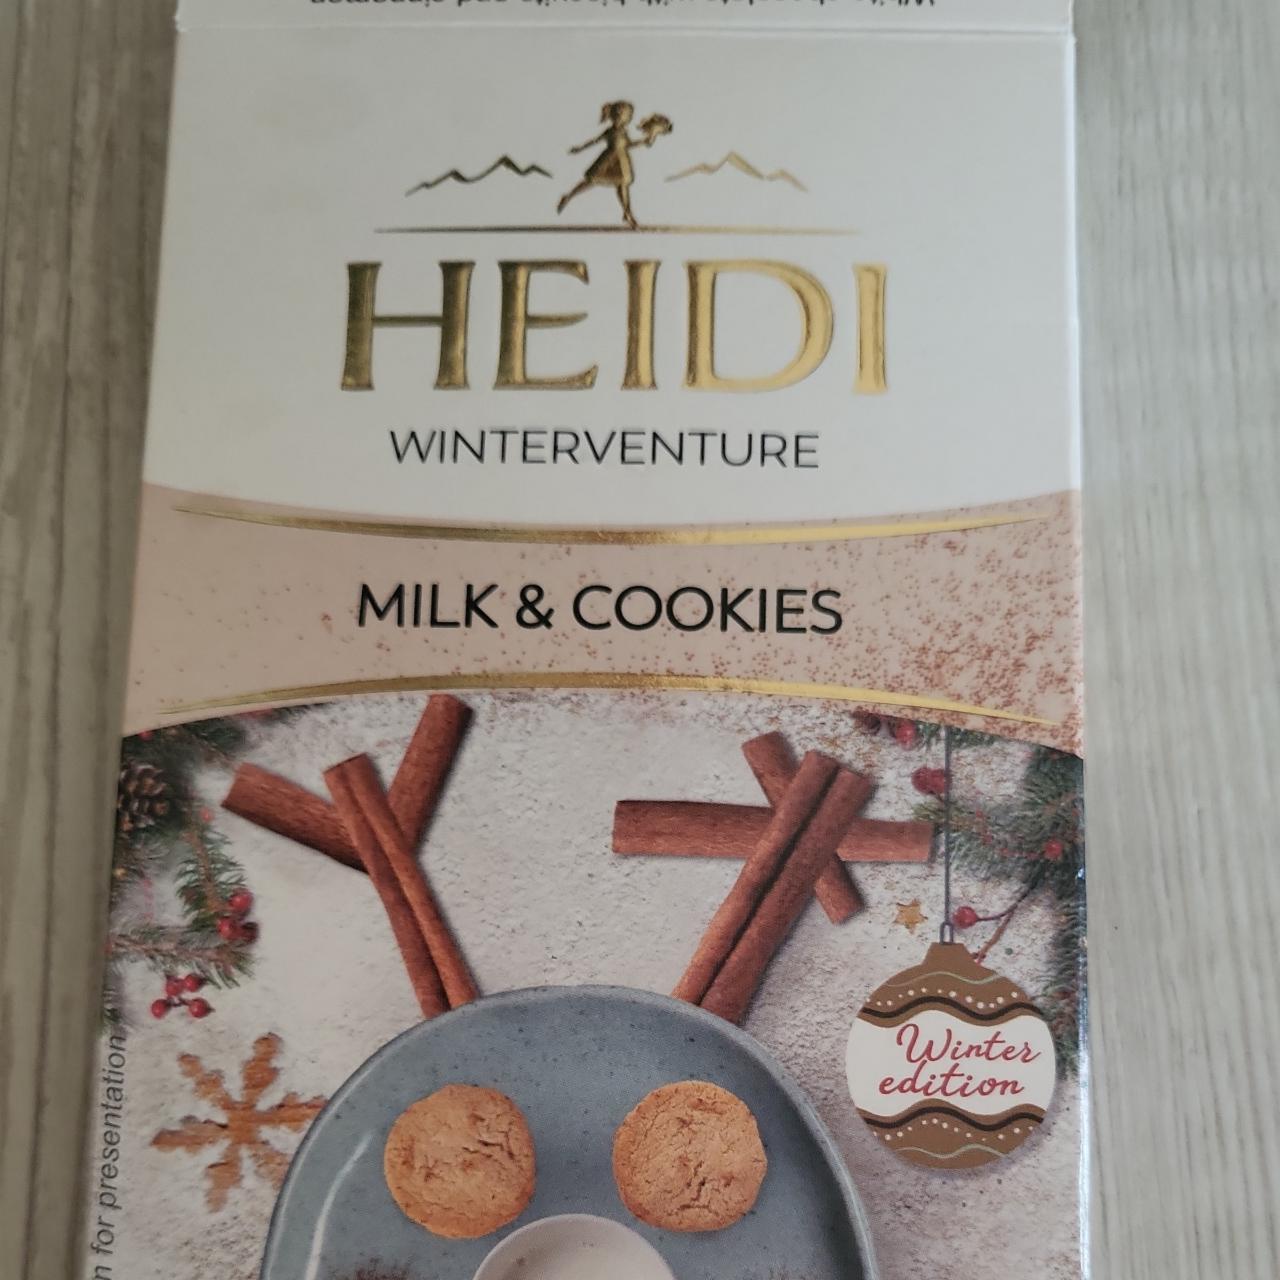 Fotografie - WinterVenture Milk & Cookies Heidi